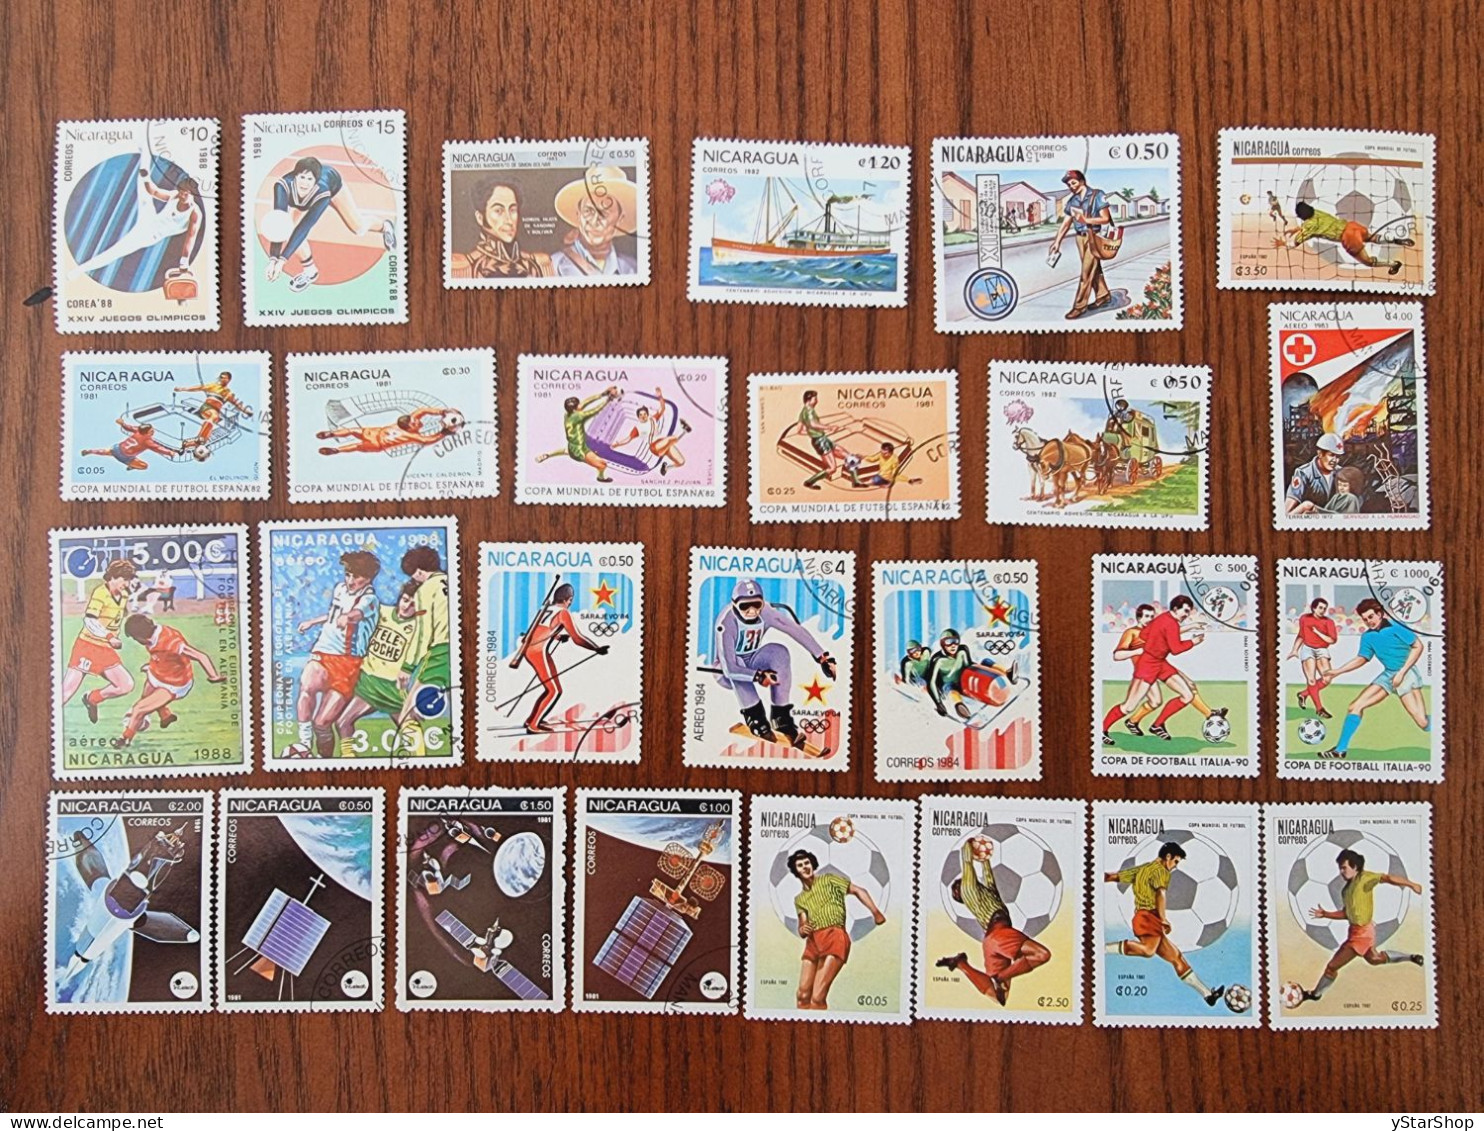 Nicaragua Stamps Lot - Used - Various Themes - Nicaragua